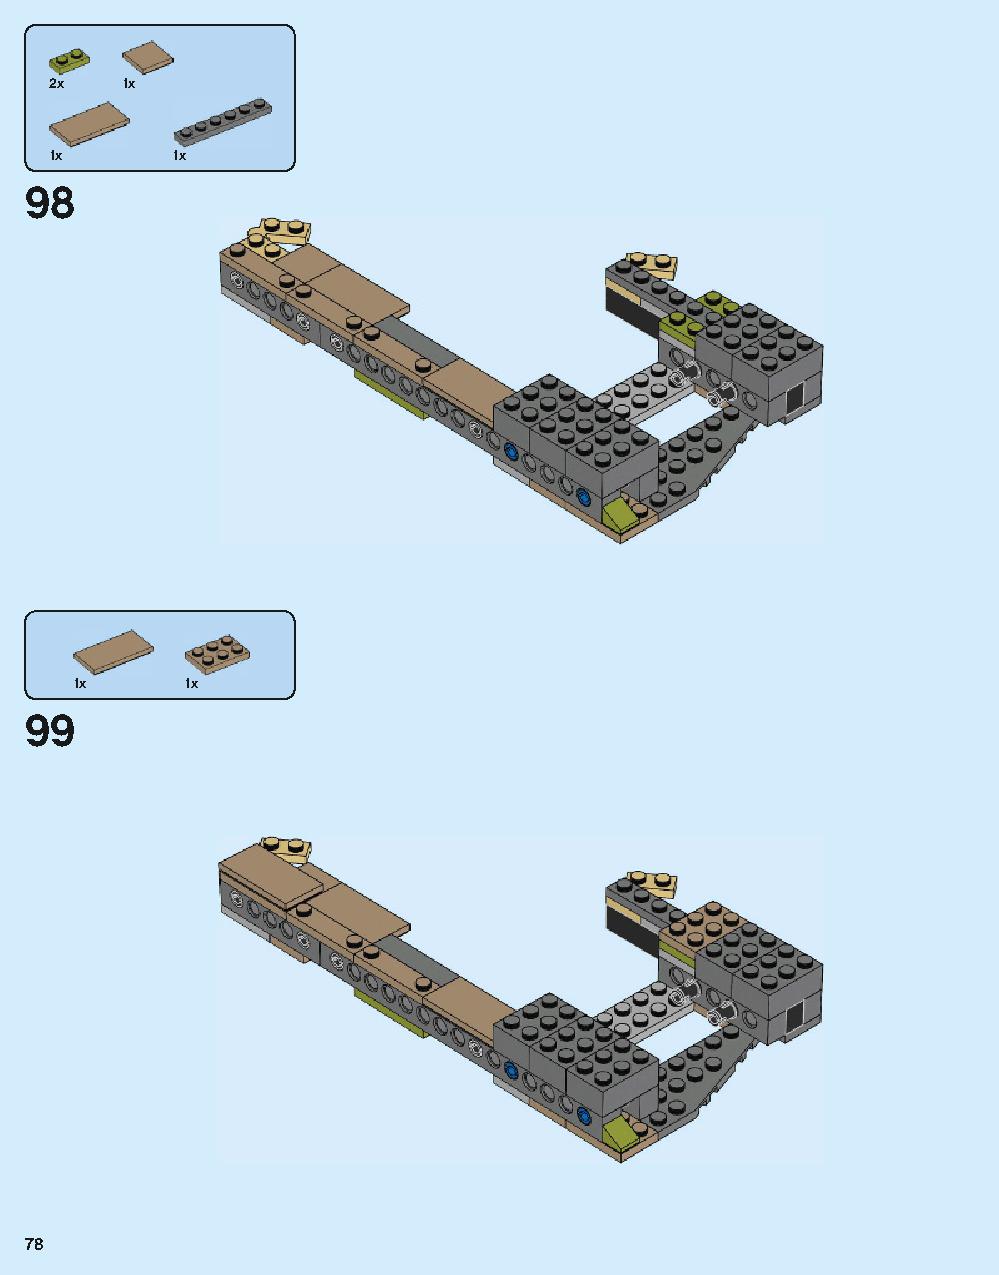 ホグワーツ城 71043 レゴの商品情報 レゴの説明書・組立方法 78 page